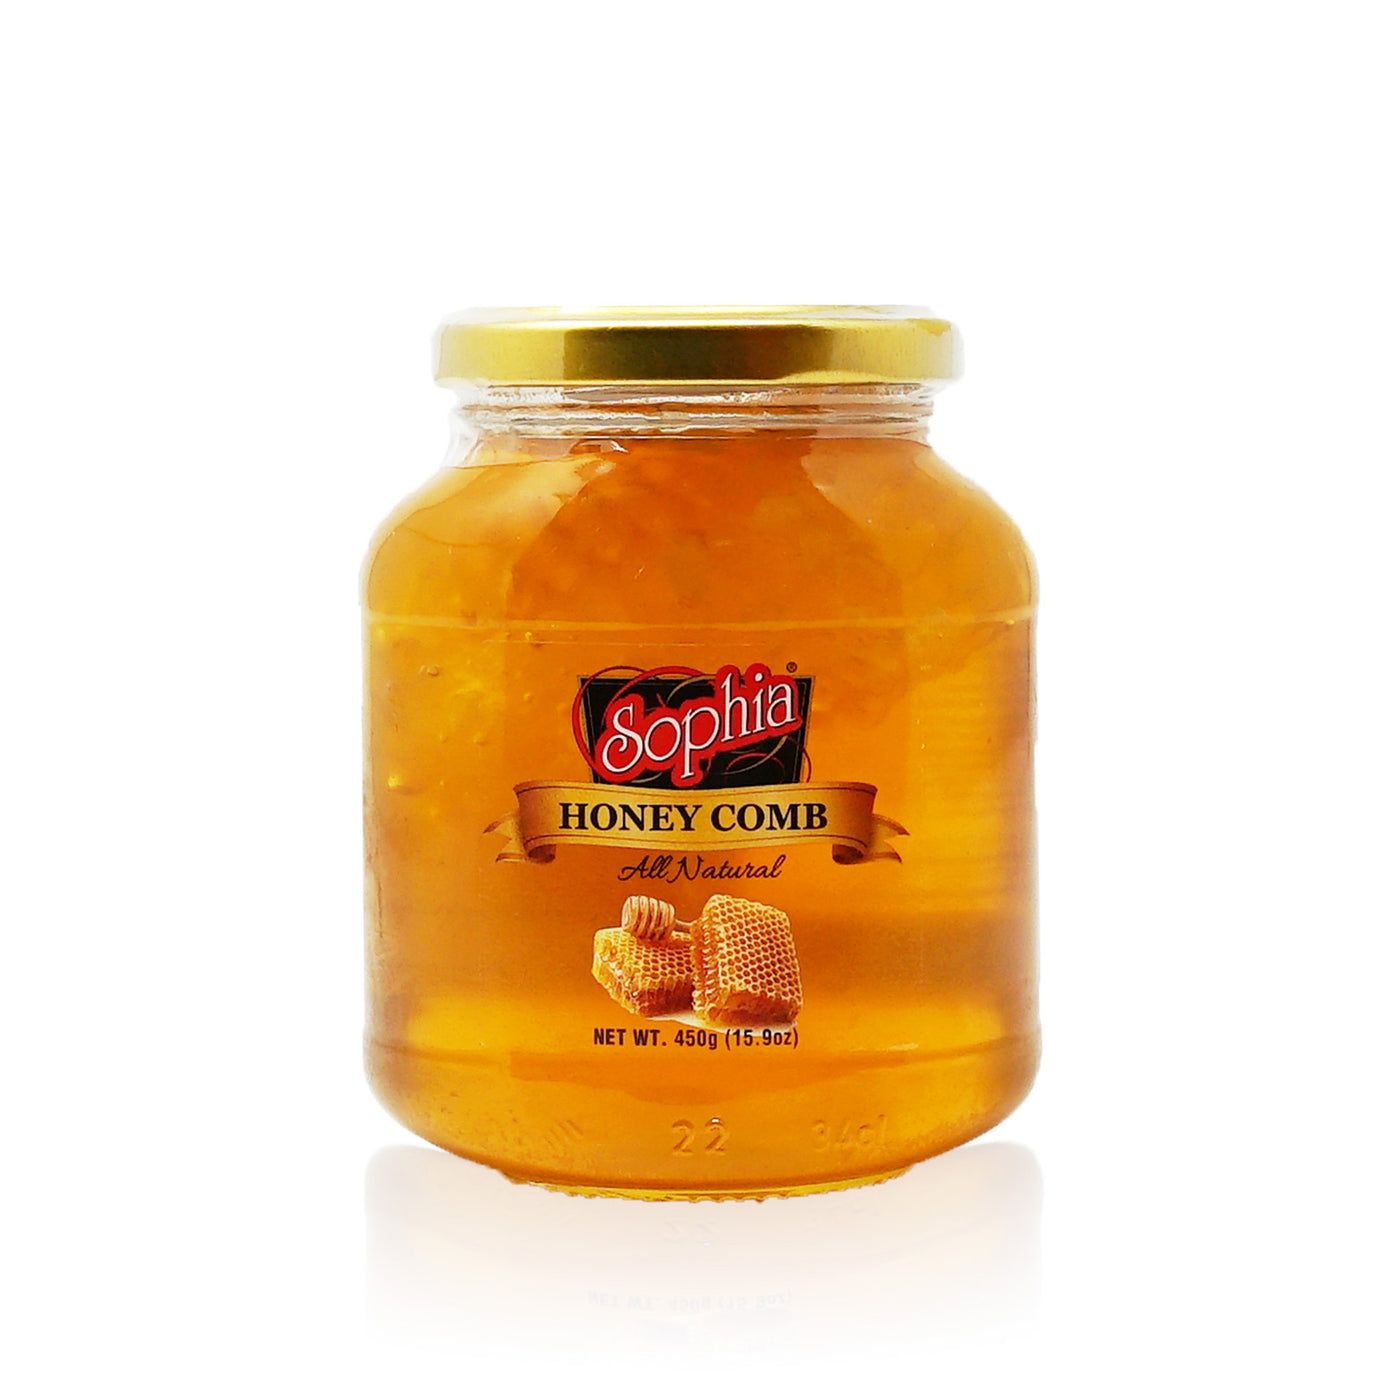 Sophia Honey - Honey Comb